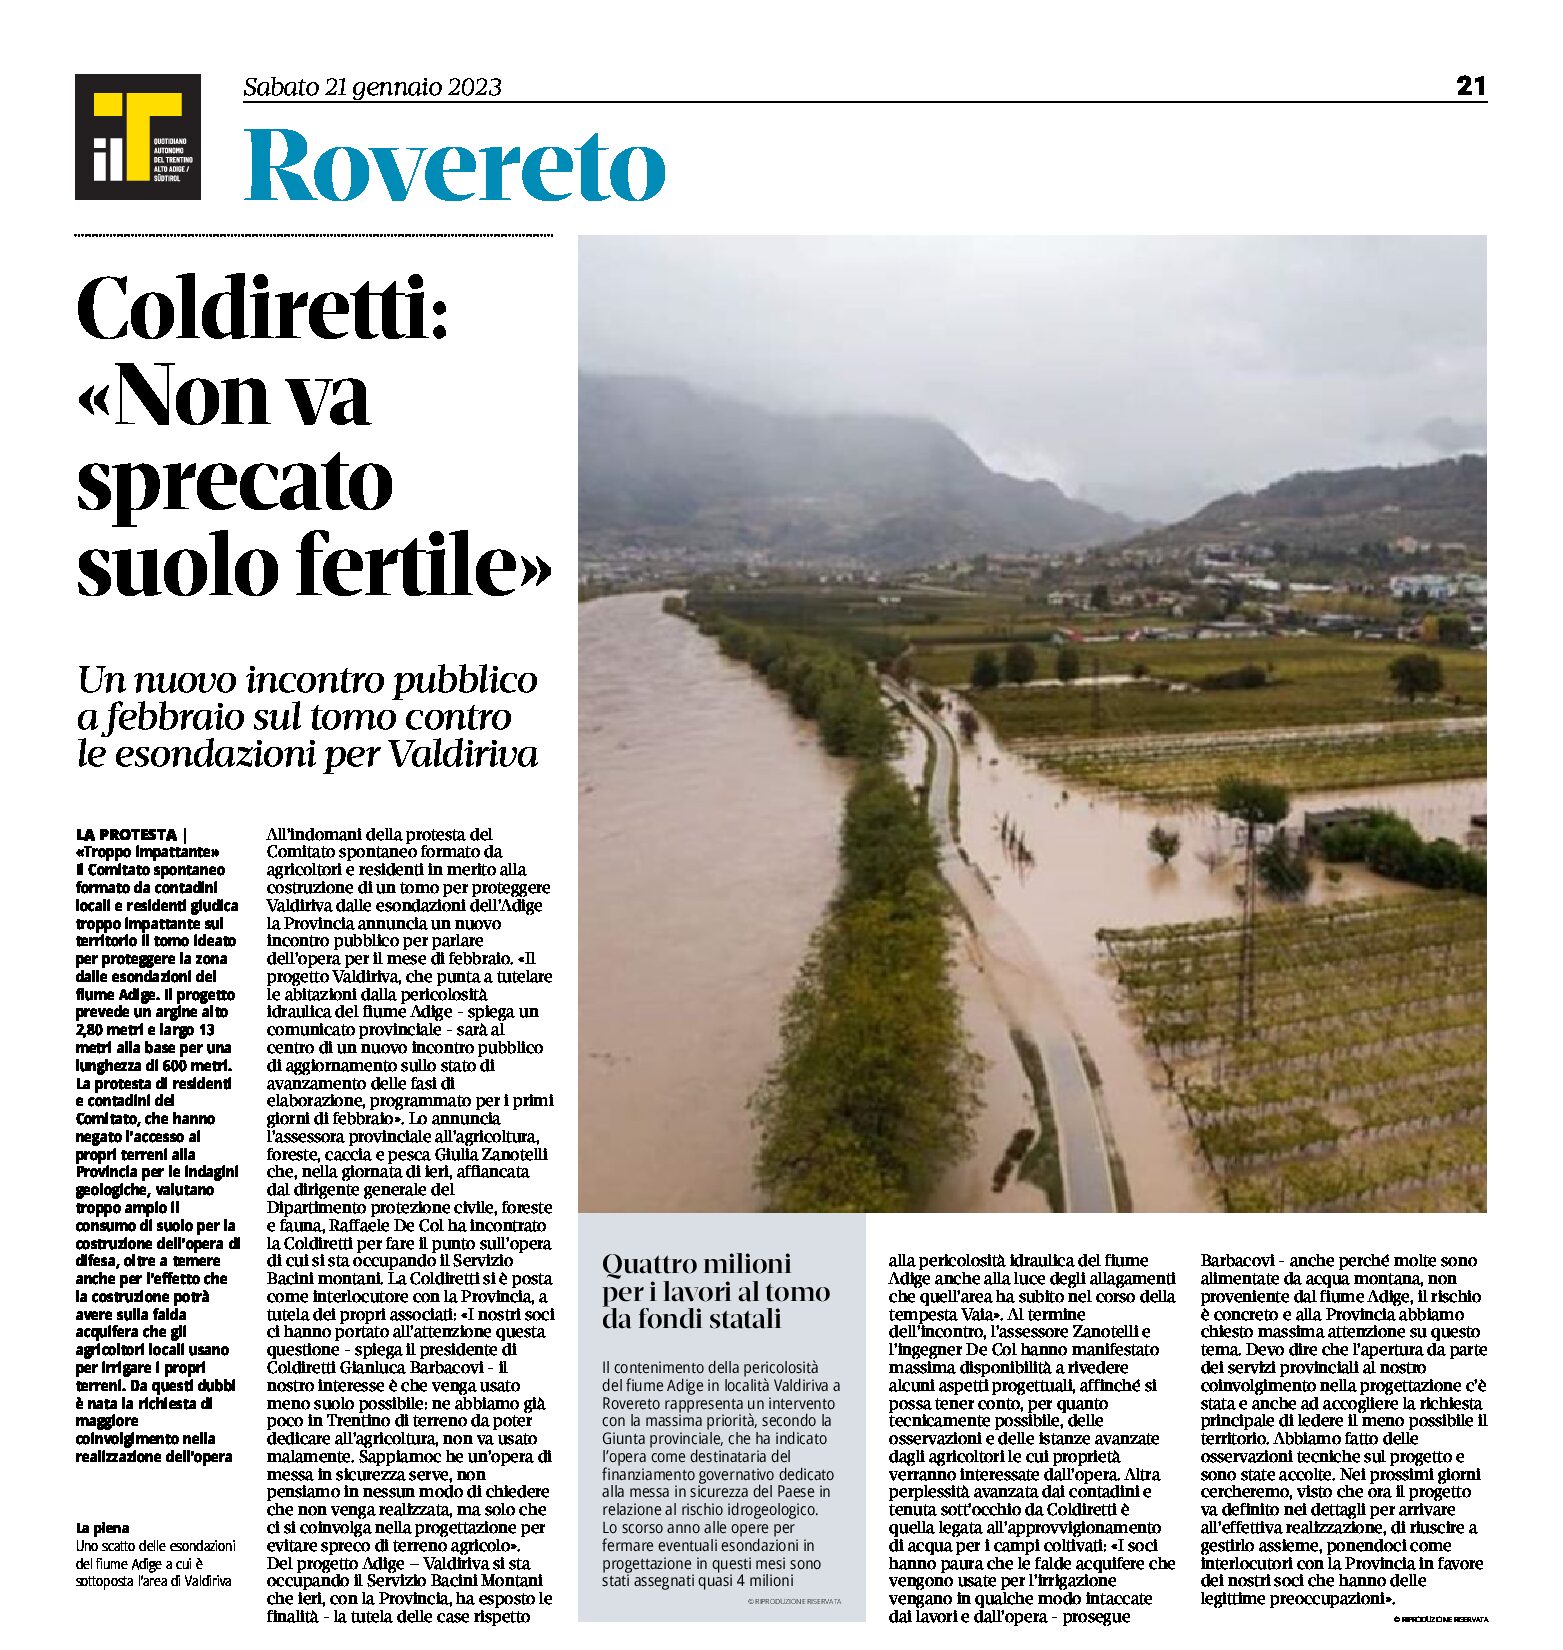 Rovereto, Coldiretti: “non va sprecato suolo fertile”. Incontro pubblico sul tomo per Valdiriva